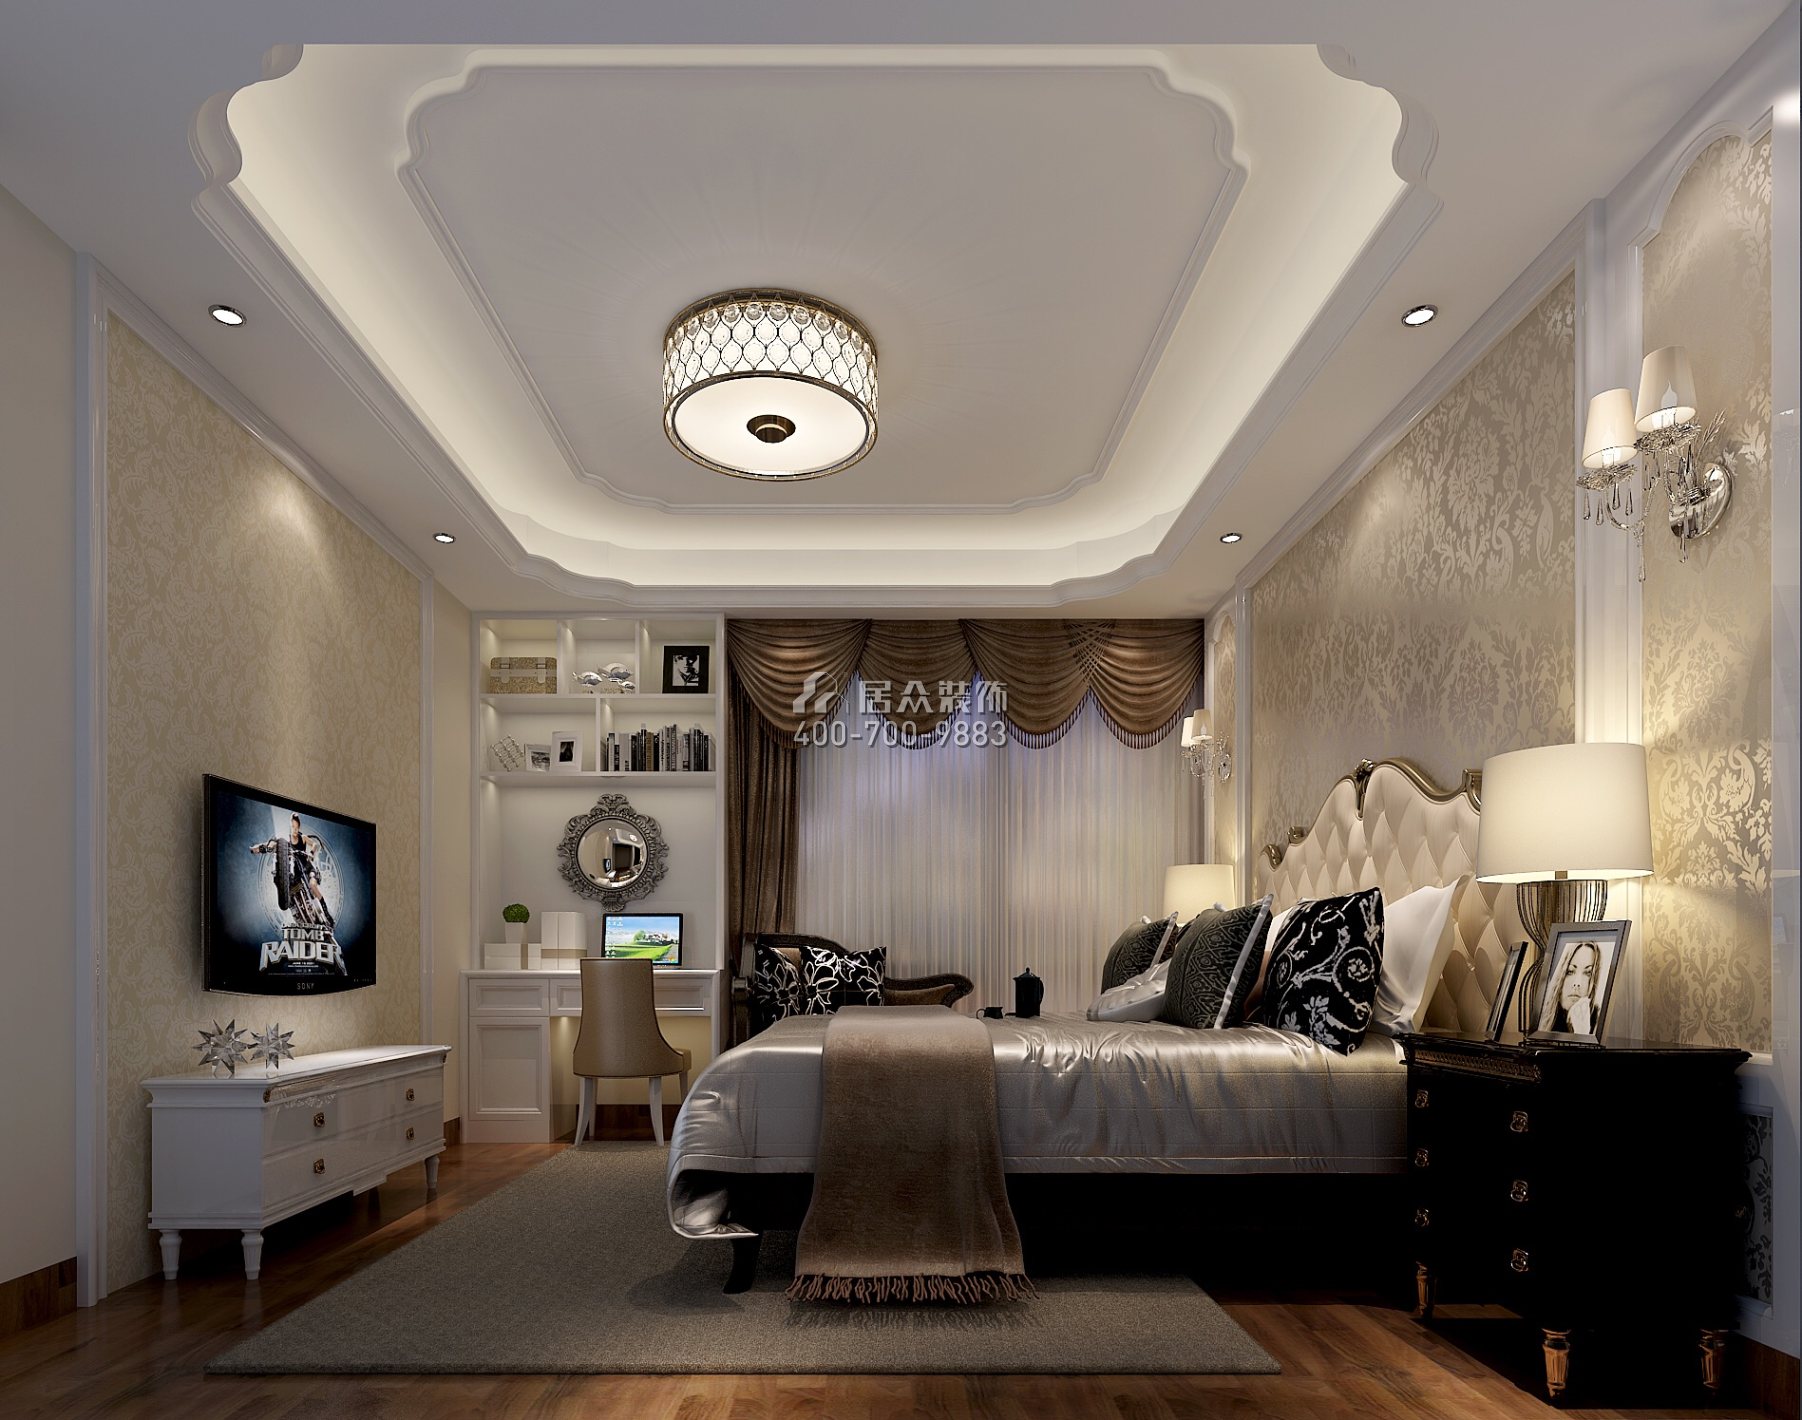 祈福天龙苑140平方米欧式风格平层户型卧室装修效果图